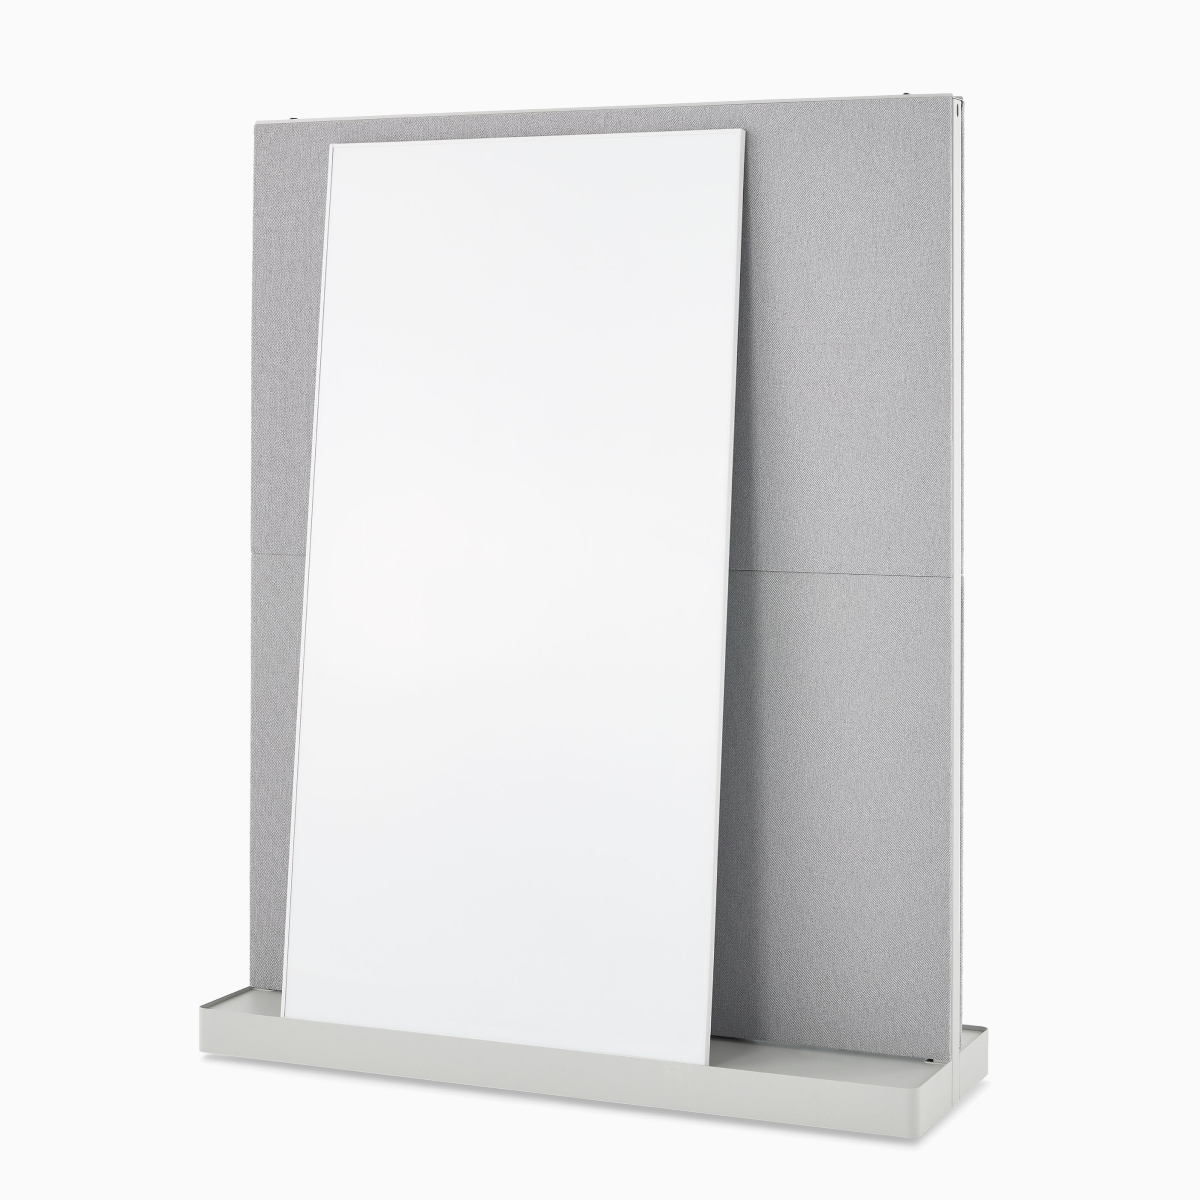 Uma Agile Wall OE1 cinza totalmente coberta por um quadro branco, vista em ângulo.